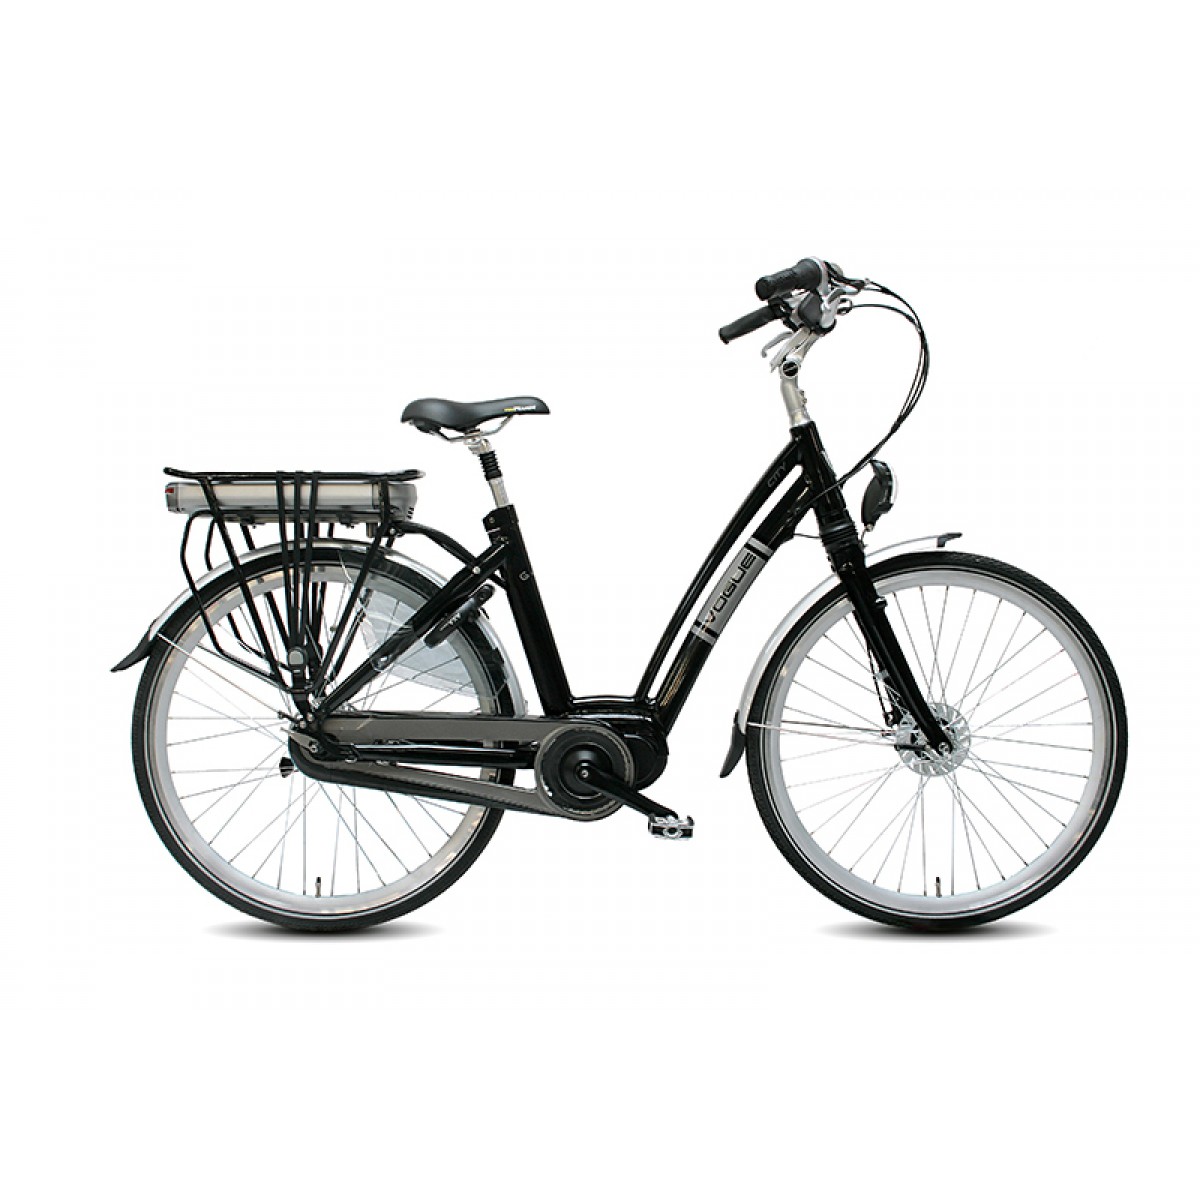 voorbeeld Pekkadillo rechter VOGUE Elektrische fiets CITY 28inch Ebikes Silver-Black NX8 Lady - Nieuwe  fiets kopen? H&H Dutch Bikes!